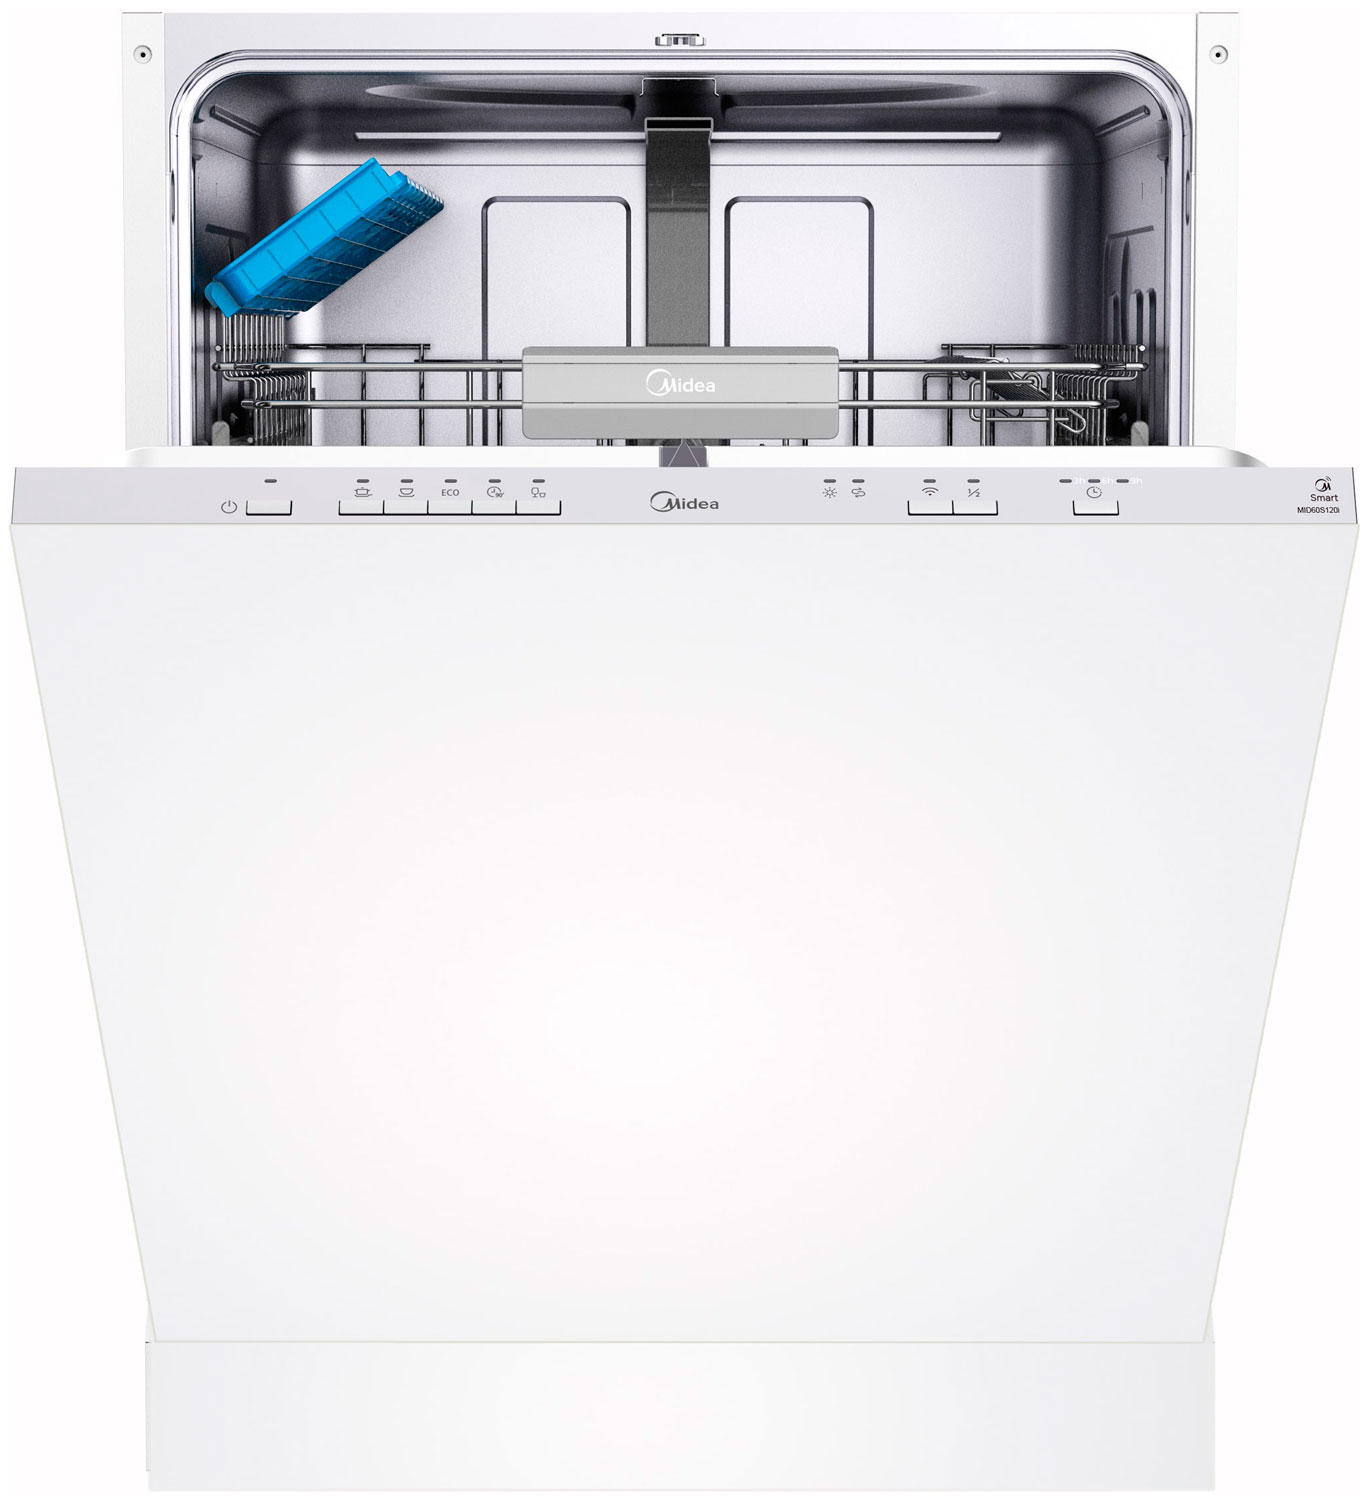 Встраиваемая посудомоечная машина Midea MID60S120i встраиваемая посудомоечная машина midea mid60s430i